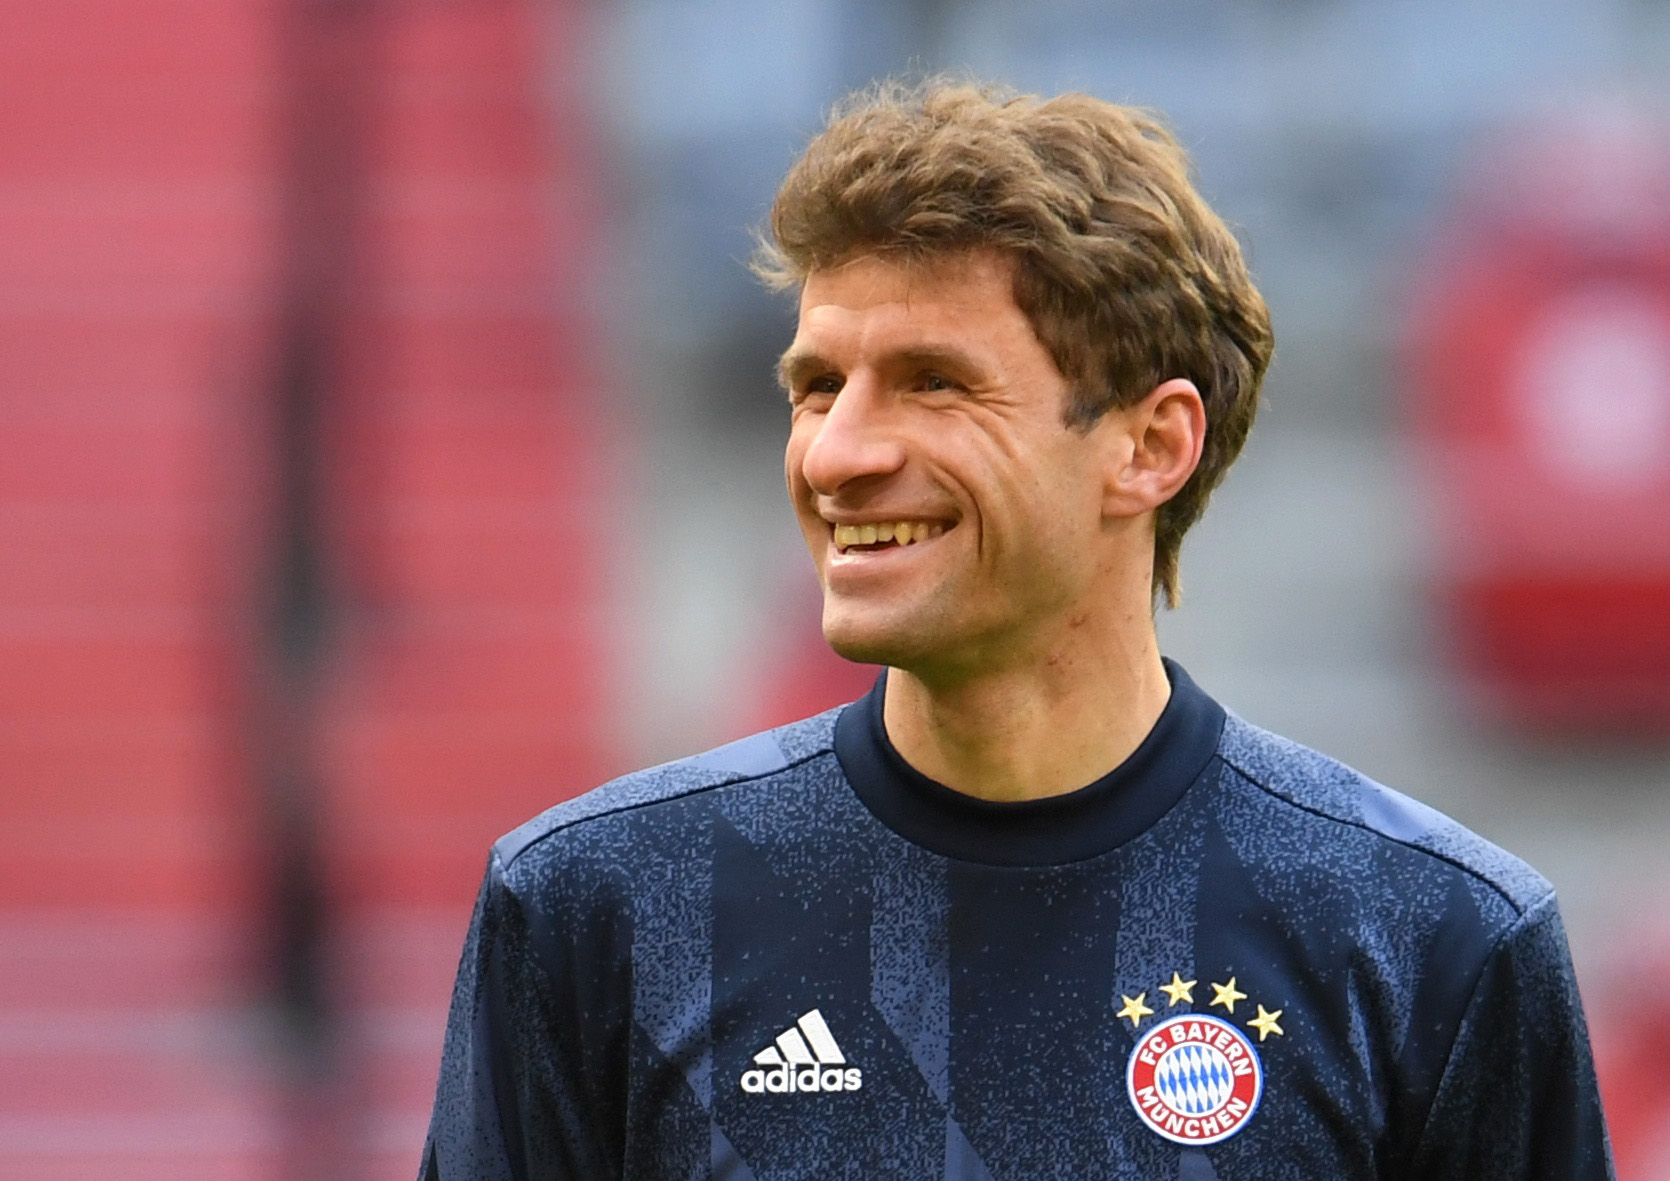 “Ikonë absolute e këtij klubi”, presidenti i Bayern Munich me fjalë të mëdha për Muller